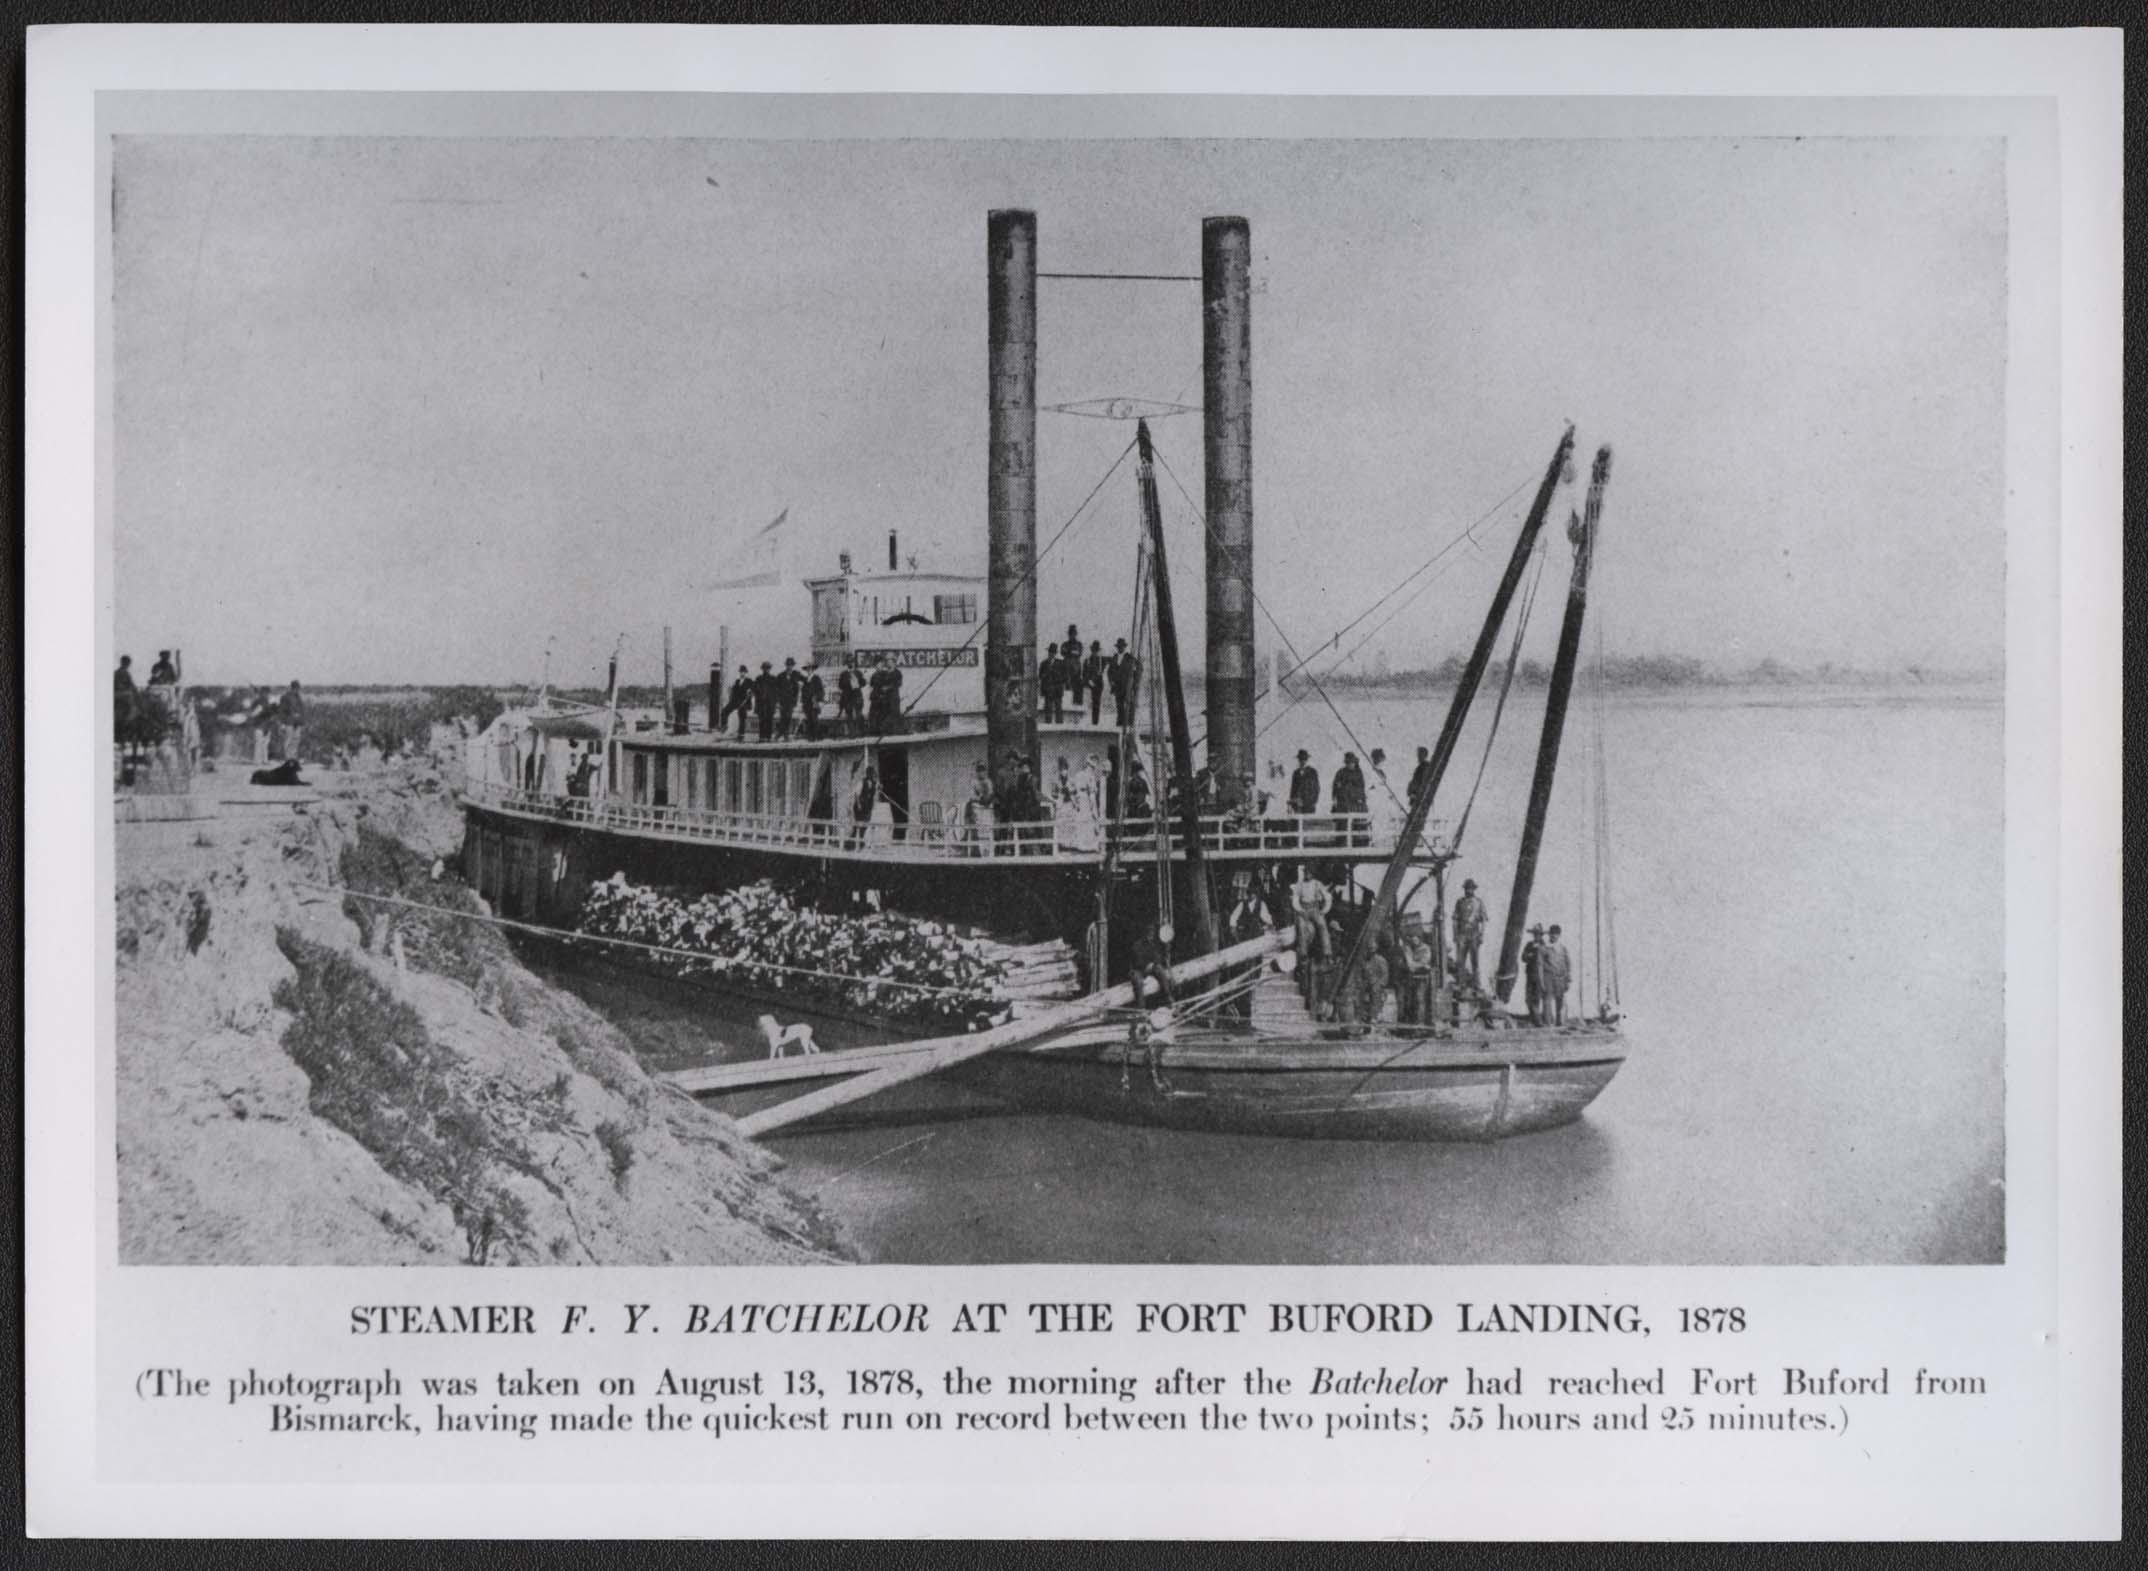 Steamer F.Y. Batchelor at landing, Fort Buford